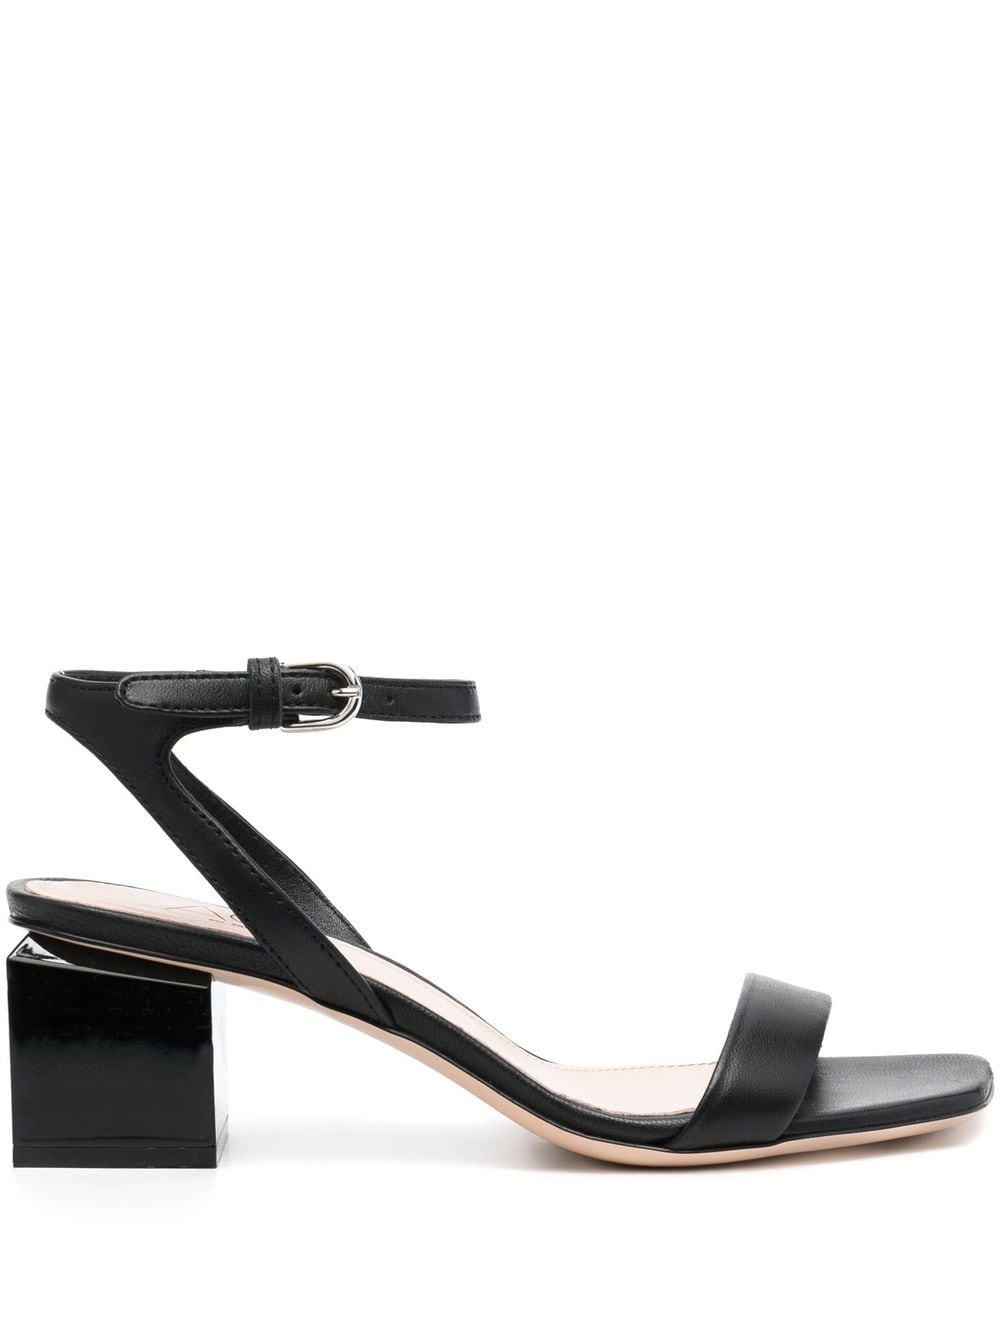 Shop Agl Attilio Giusti Leombruni Patent-leather Sandals In Black